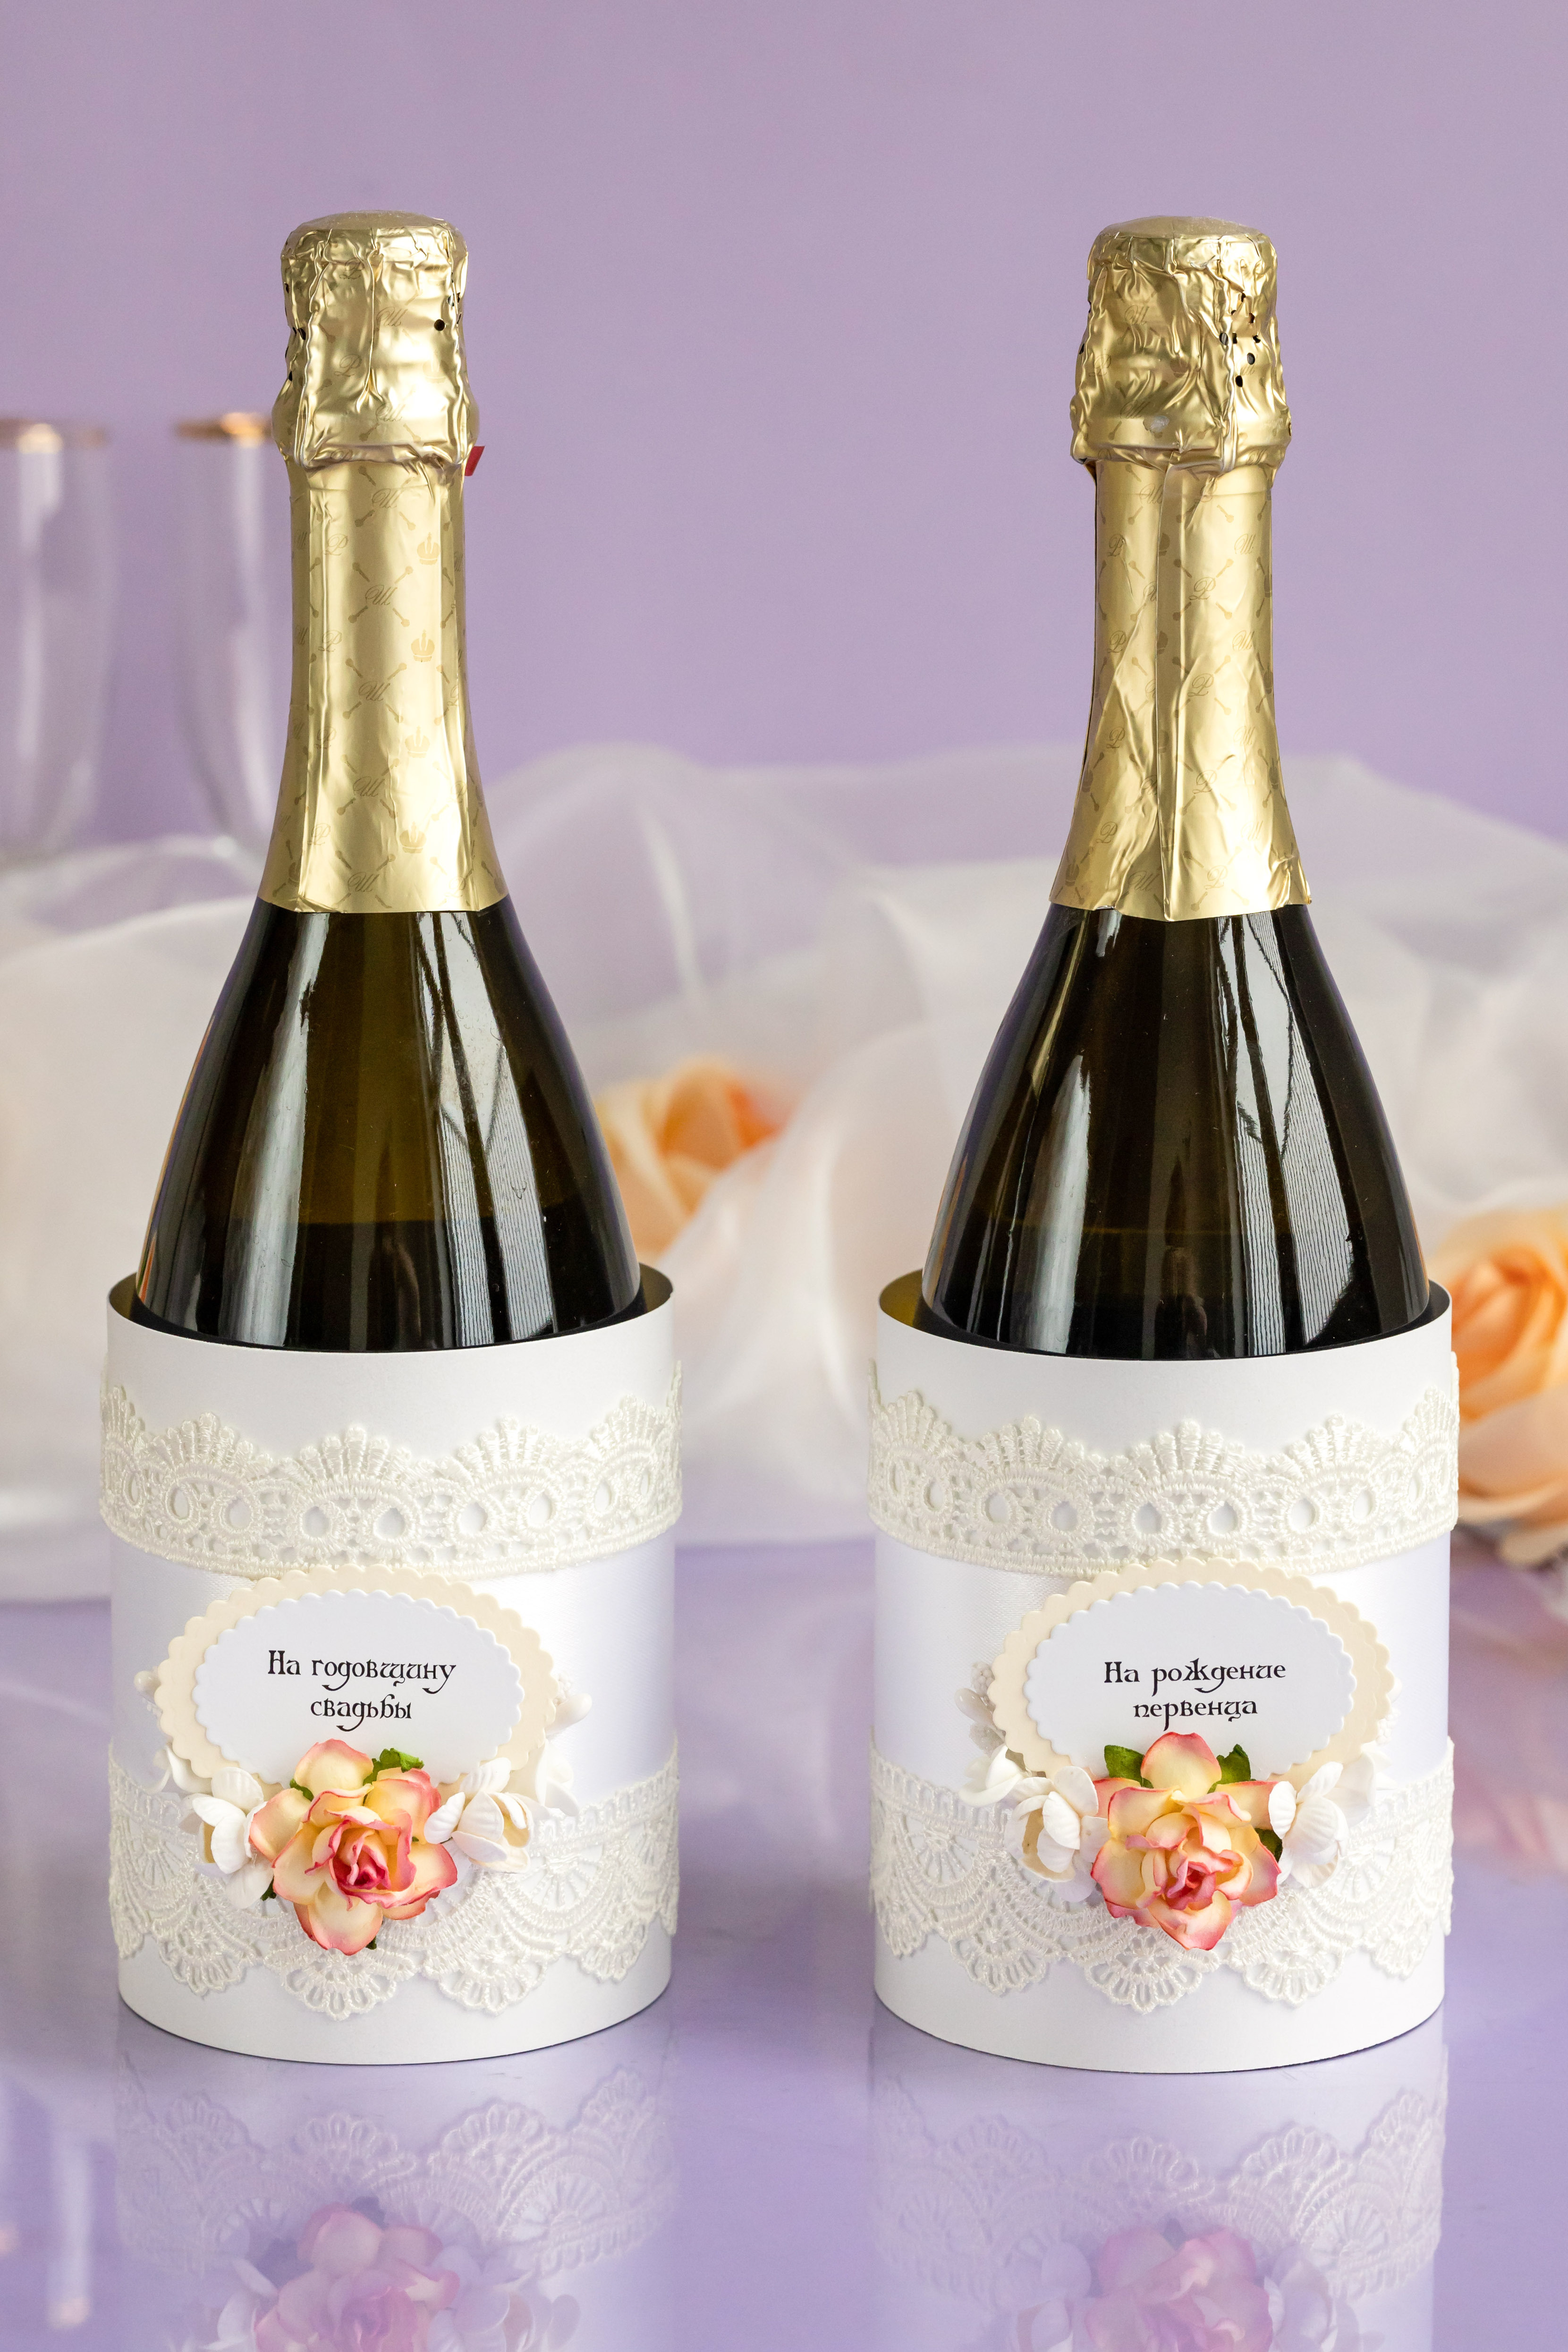 Недорогое игристое вино и шампанское на свадьбу